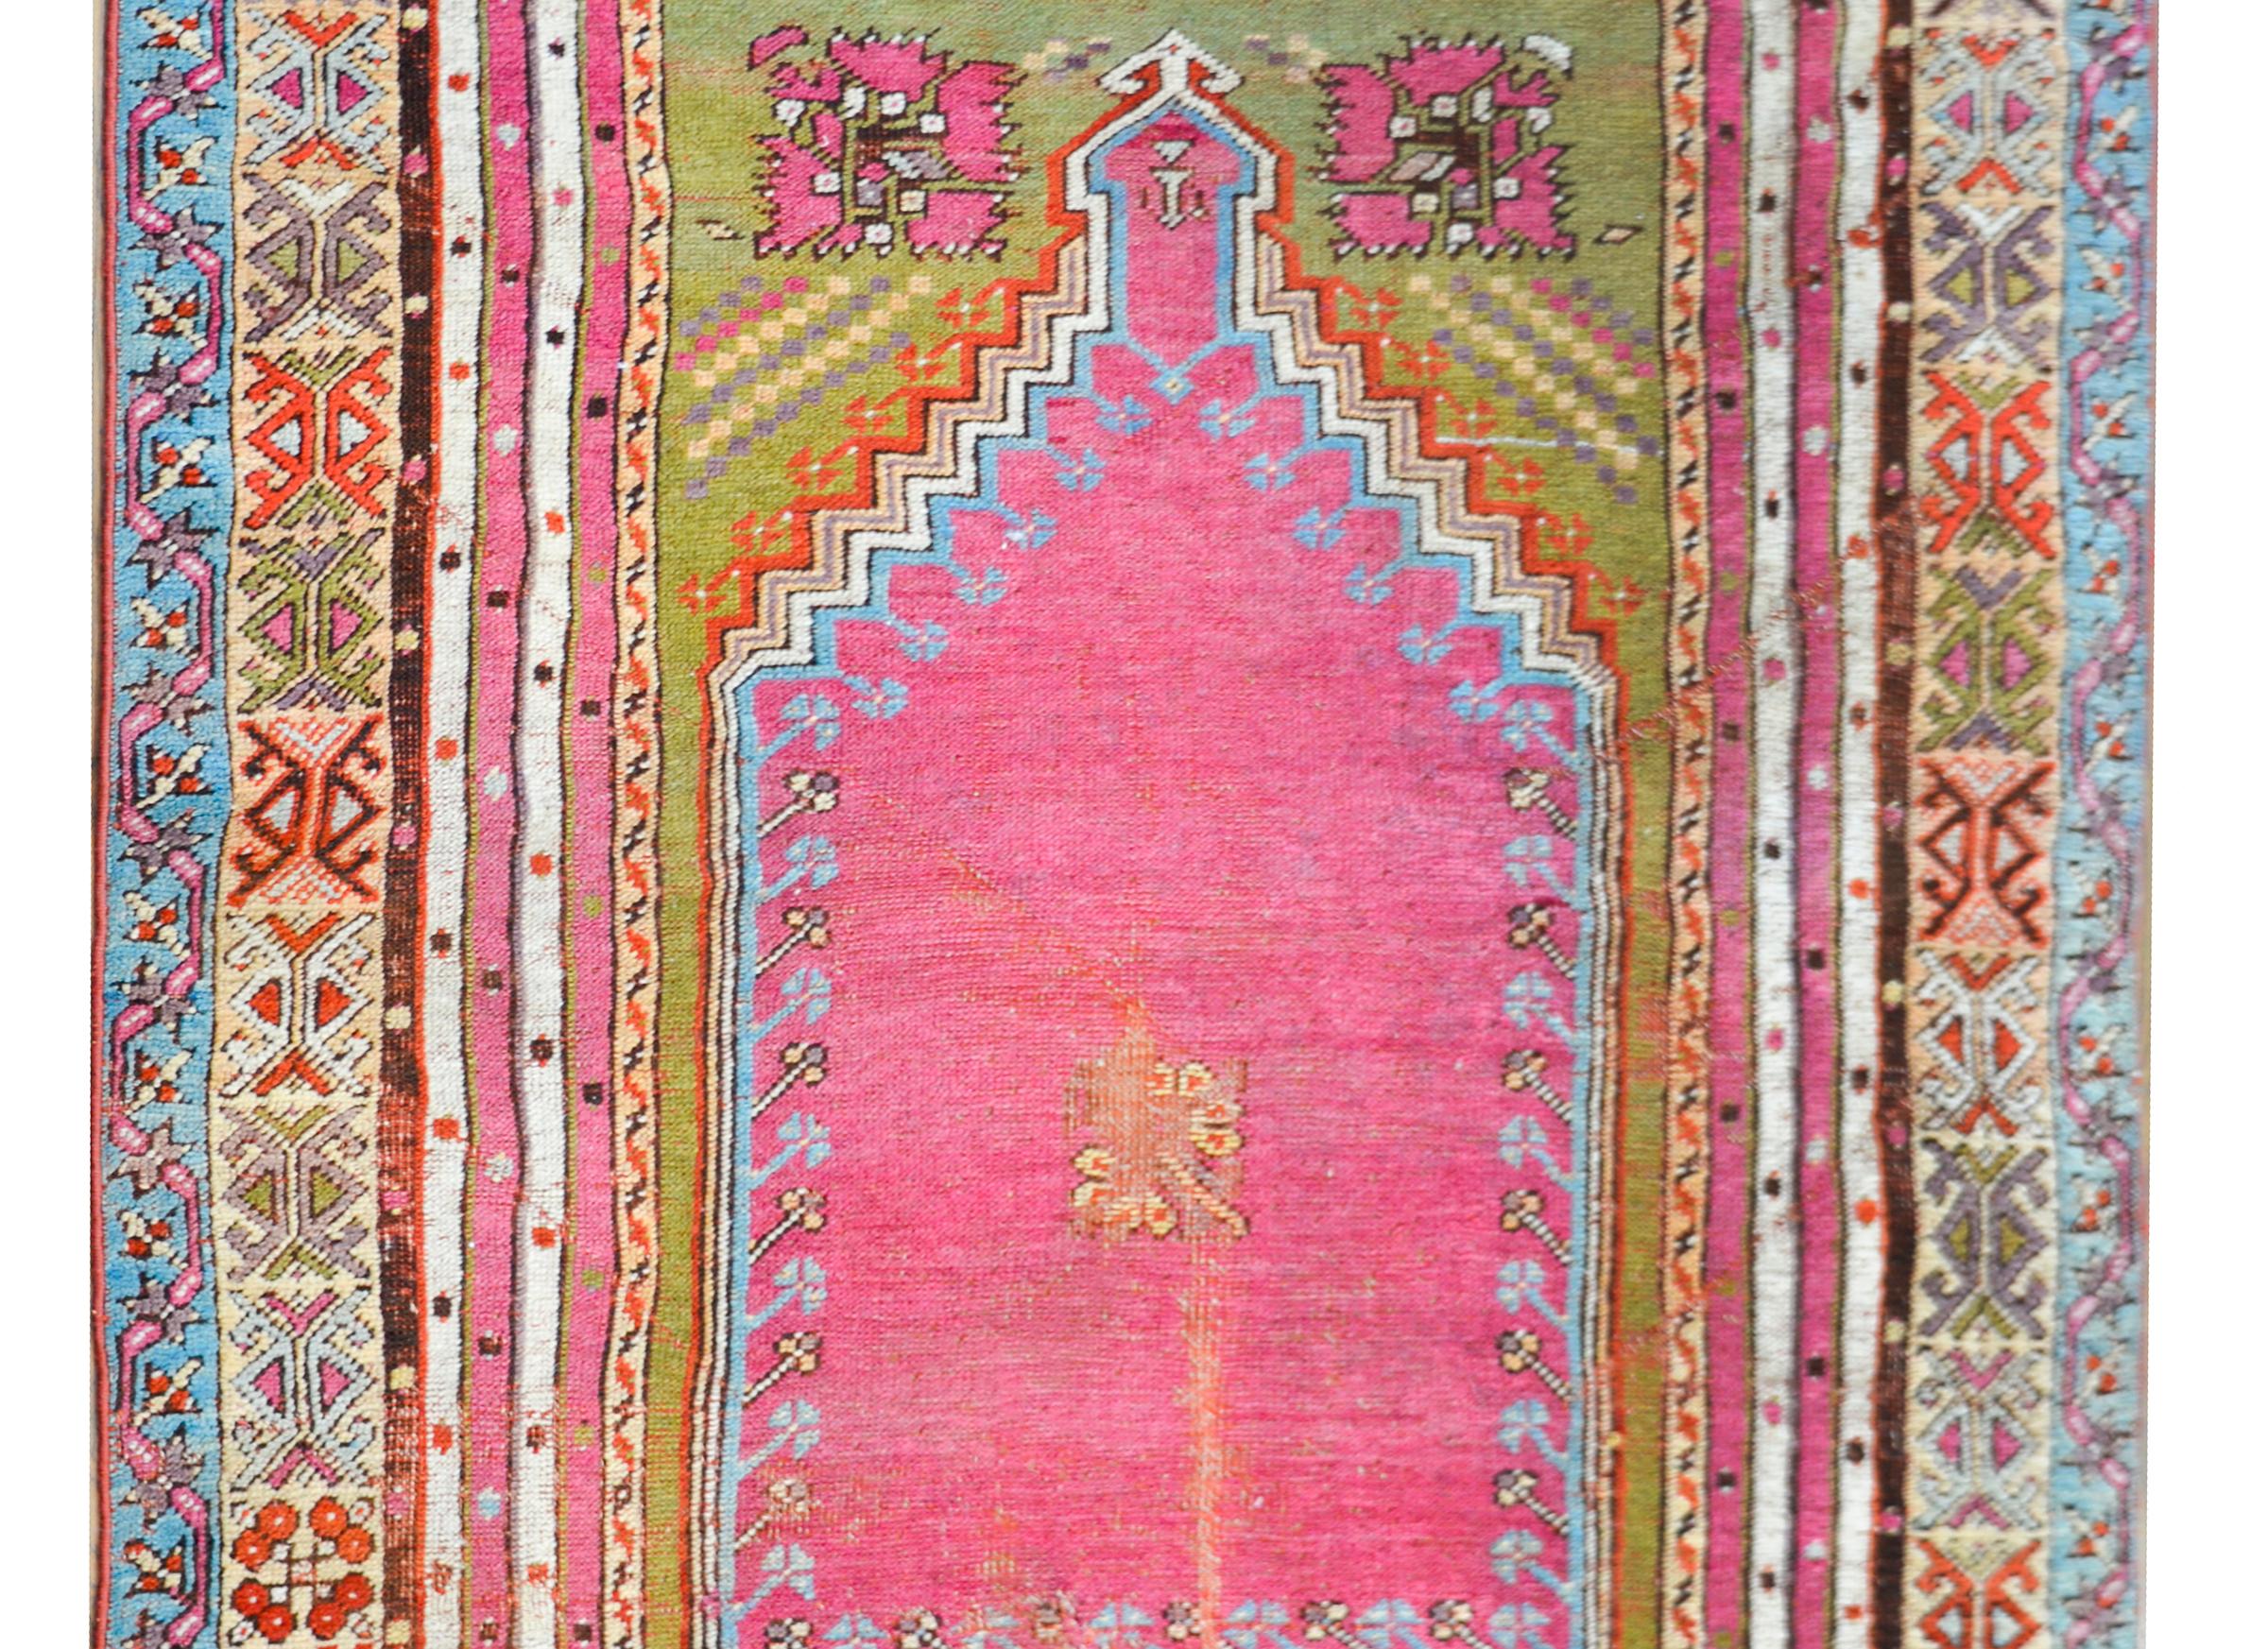 Magnifique tapis de prière turc Konya du début du 20e siècle avec une magnifique palette de couleurs comprenant un centre rose vif entouré de plusieurs fines bandes stylisées à motif floral tissées en sarcelle, corail, jaune, vert chartreuse et